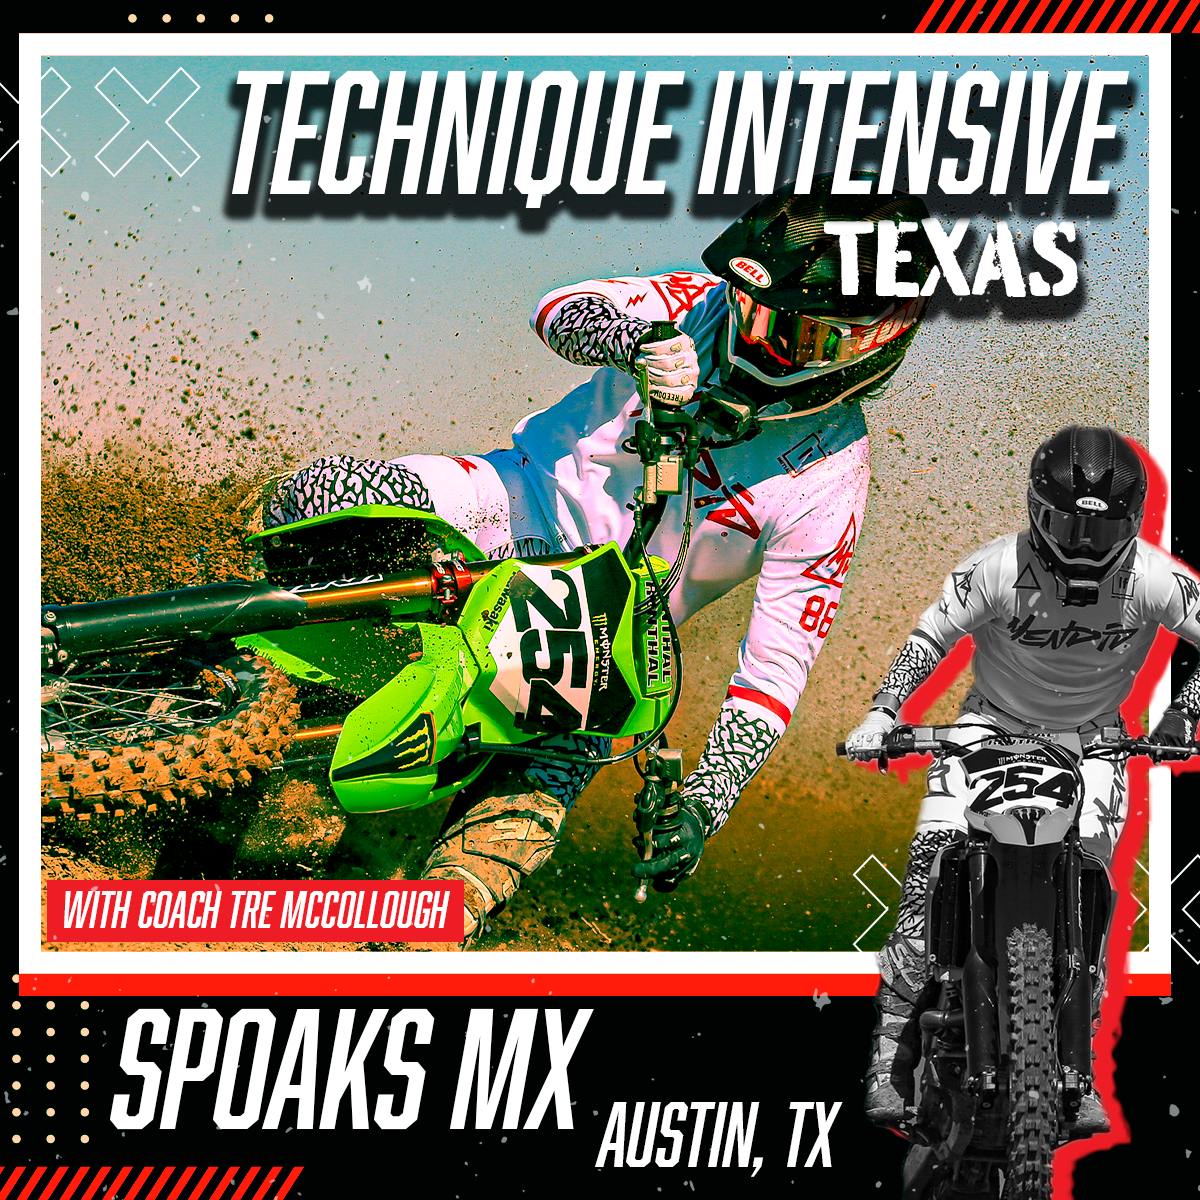 5 Day Motocross Technique Intensive (Spoaks MX) Lockhart, Texas